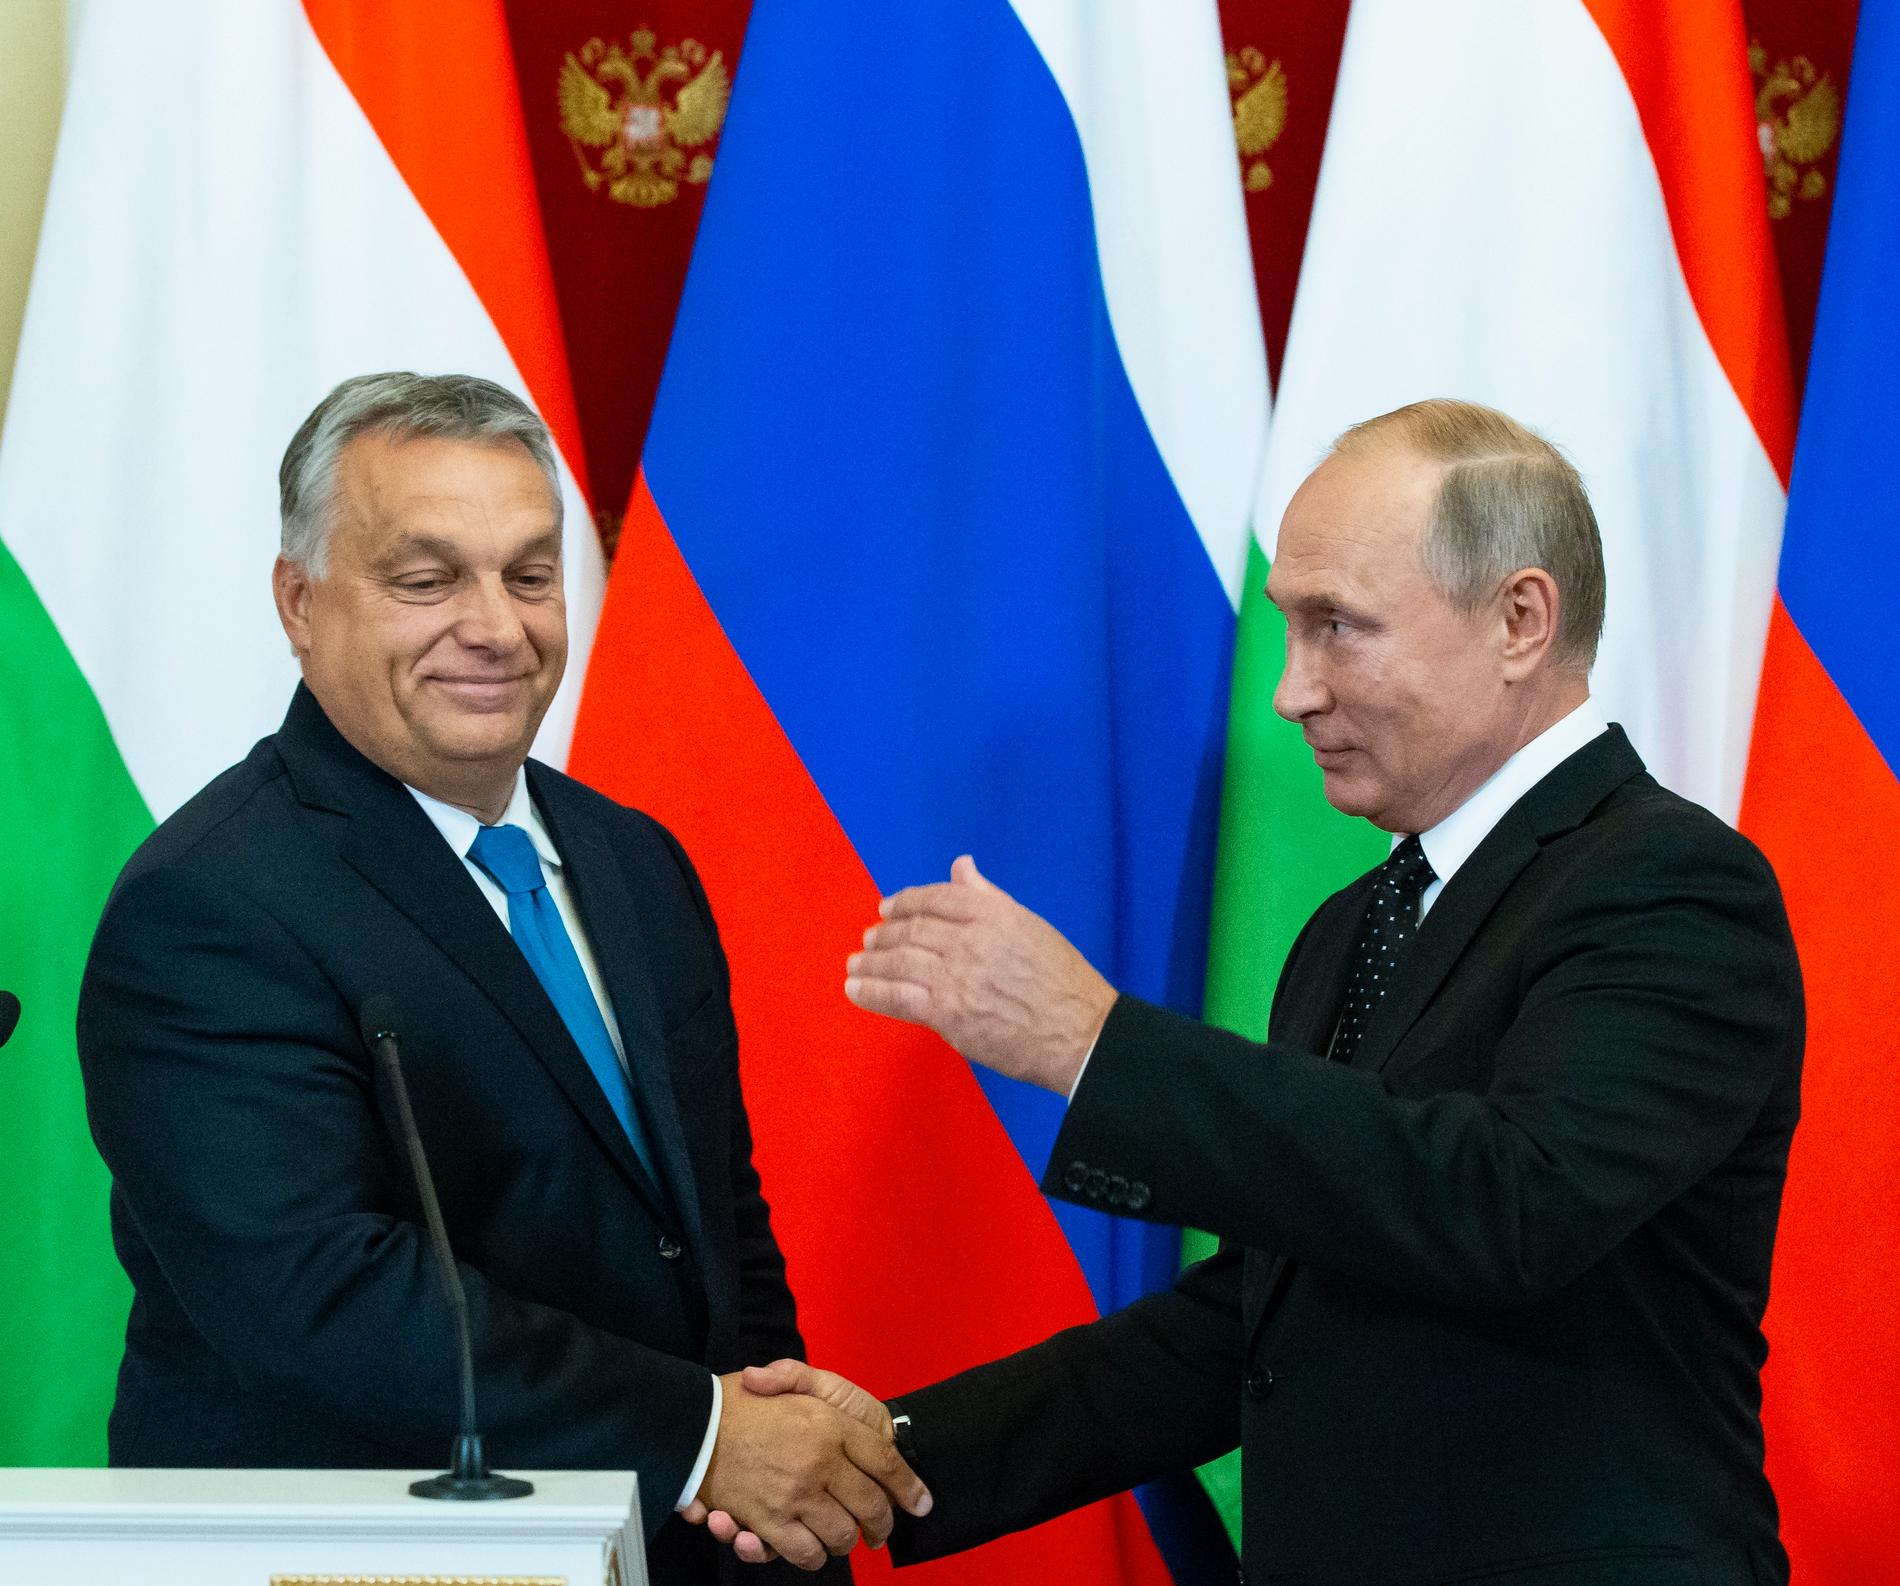 Viktor Orbán och Vladimir Putin vid ett möte i Moskva 2018.